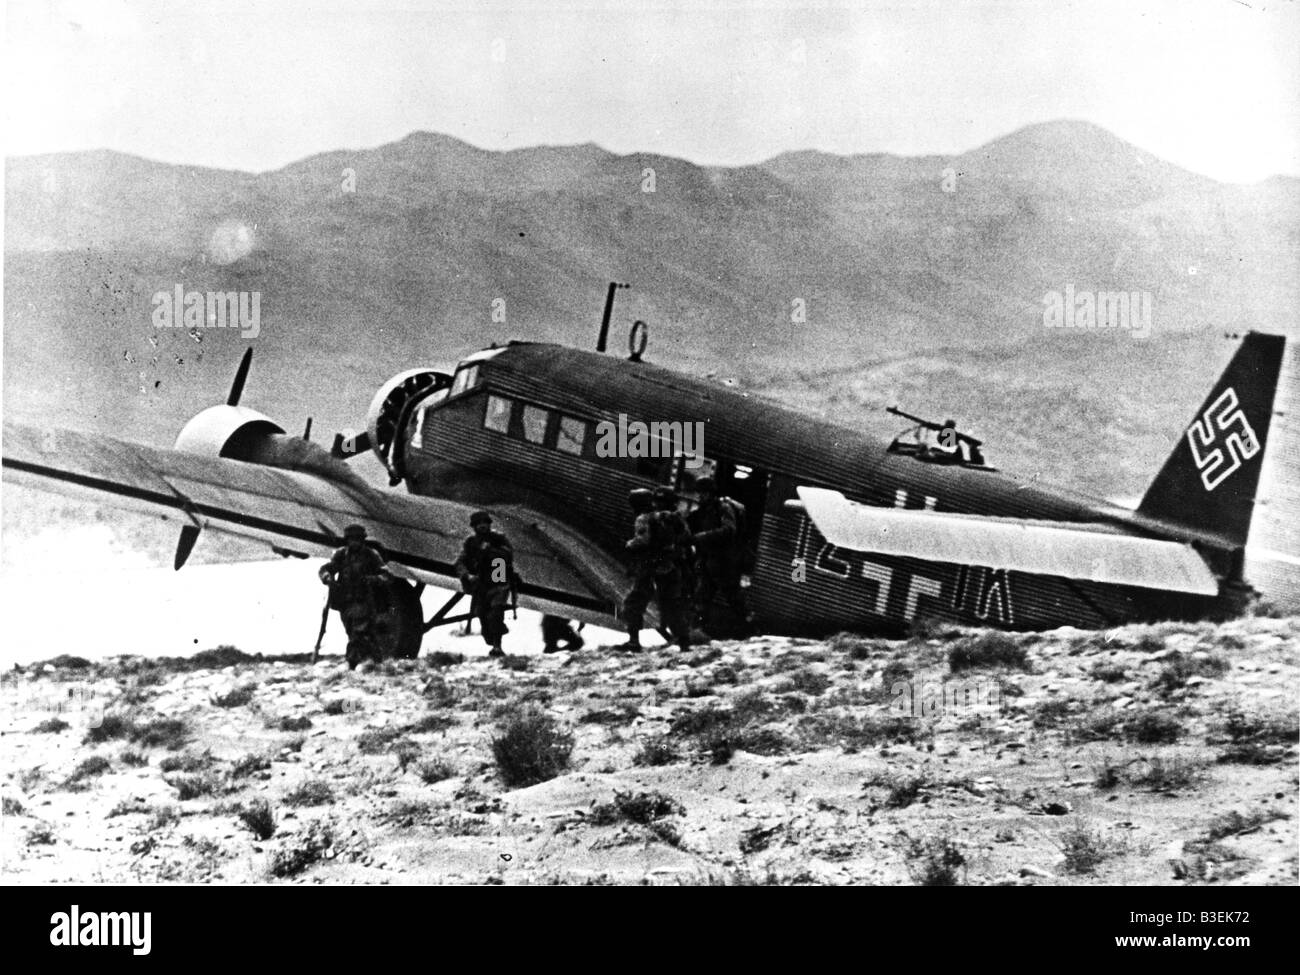 Landing on Crete 1941 / Photo Stock Photo